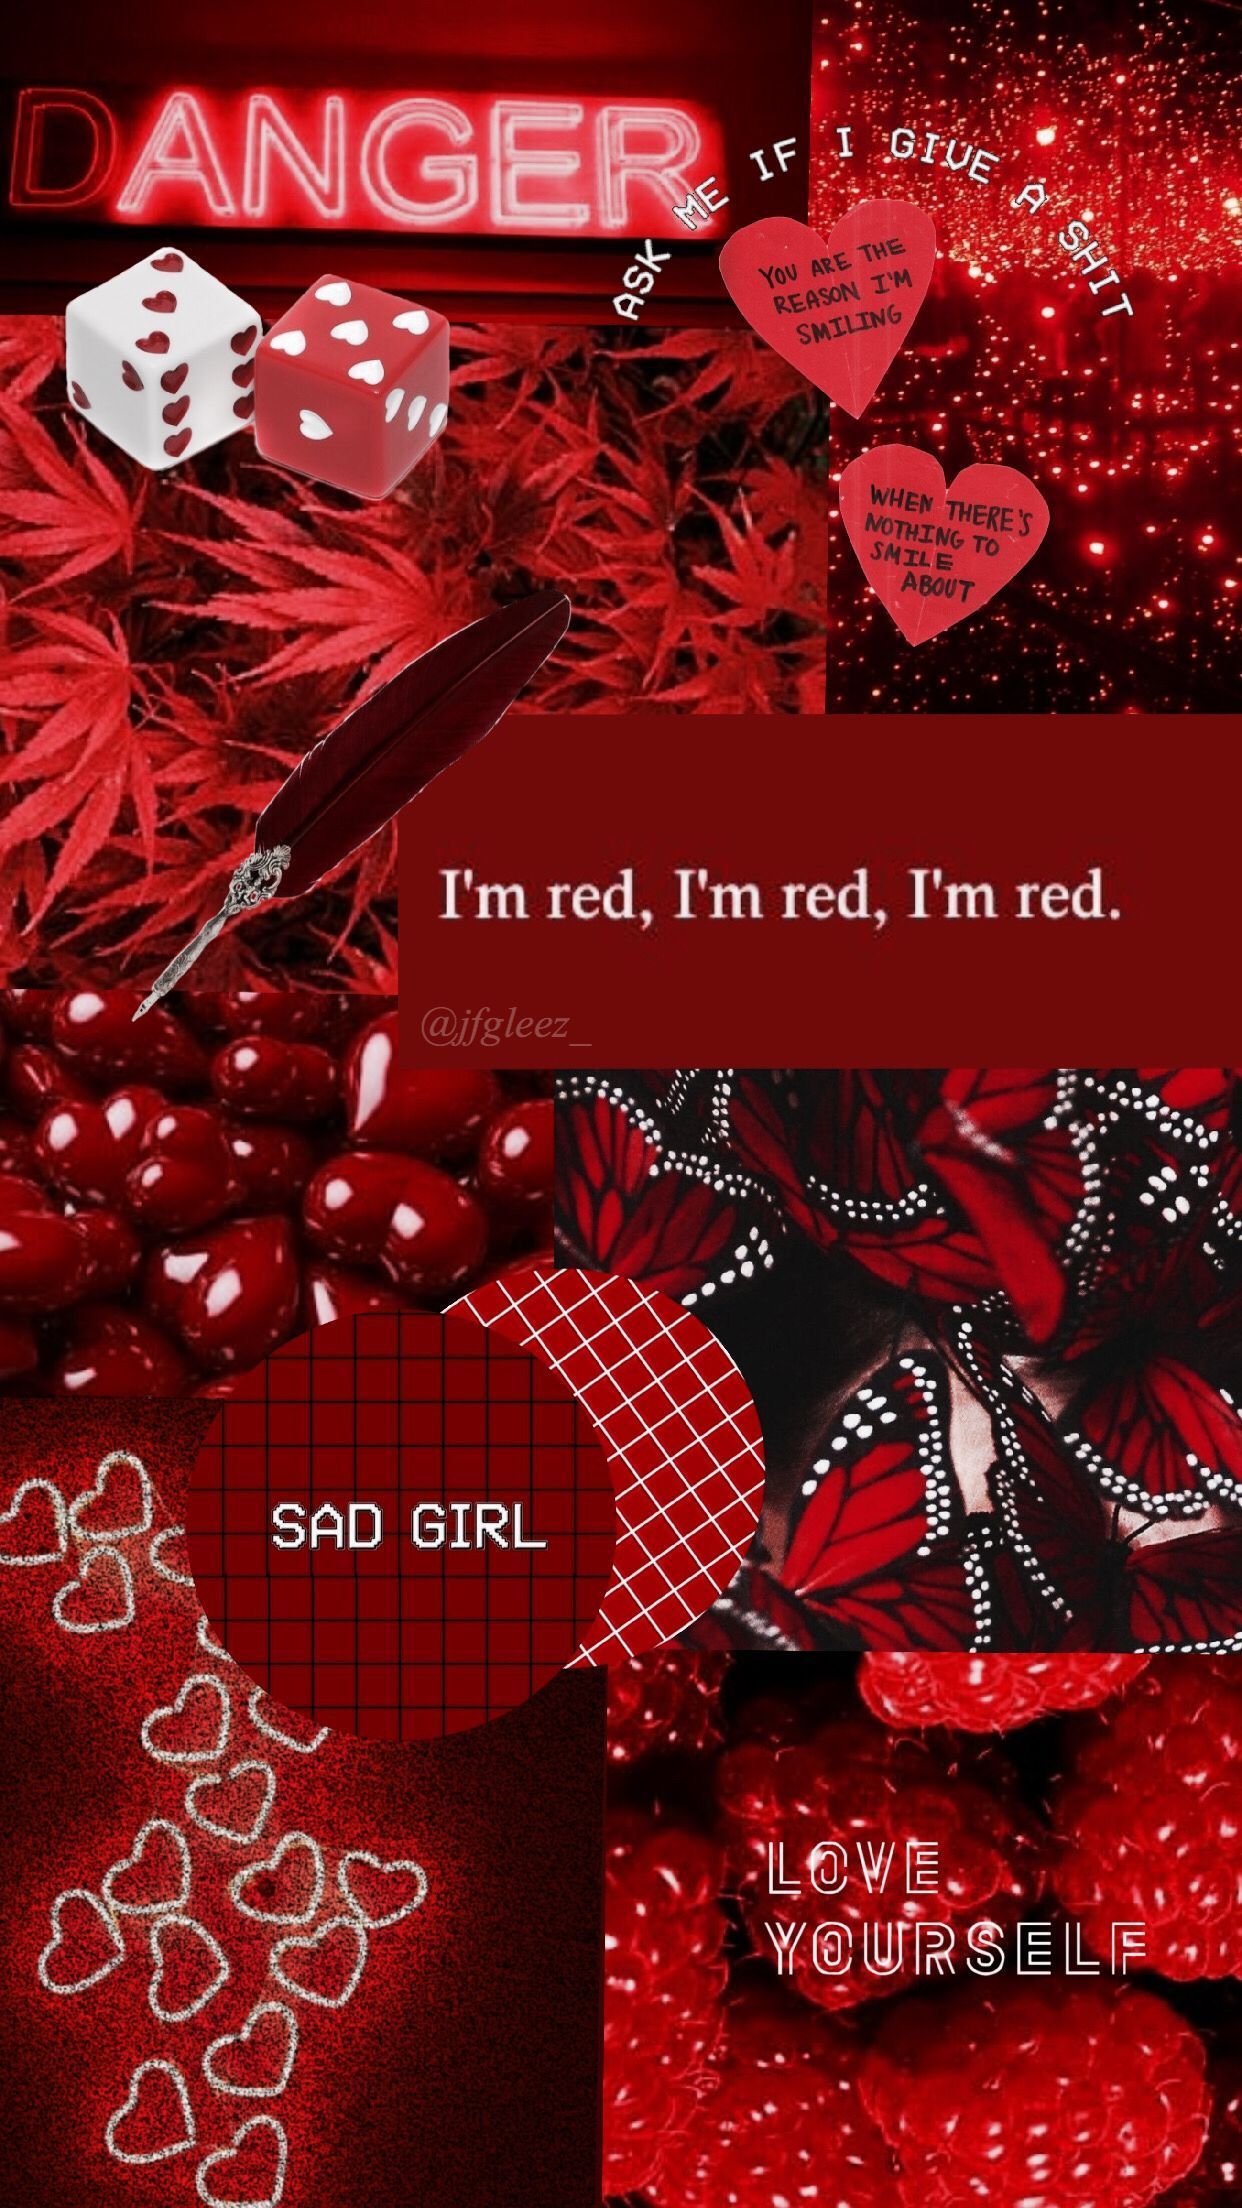 leo - #wallpaper #red #aesthetic #jfgleez_ #redaesthetic Red aesthetic wallpaper ❤&;